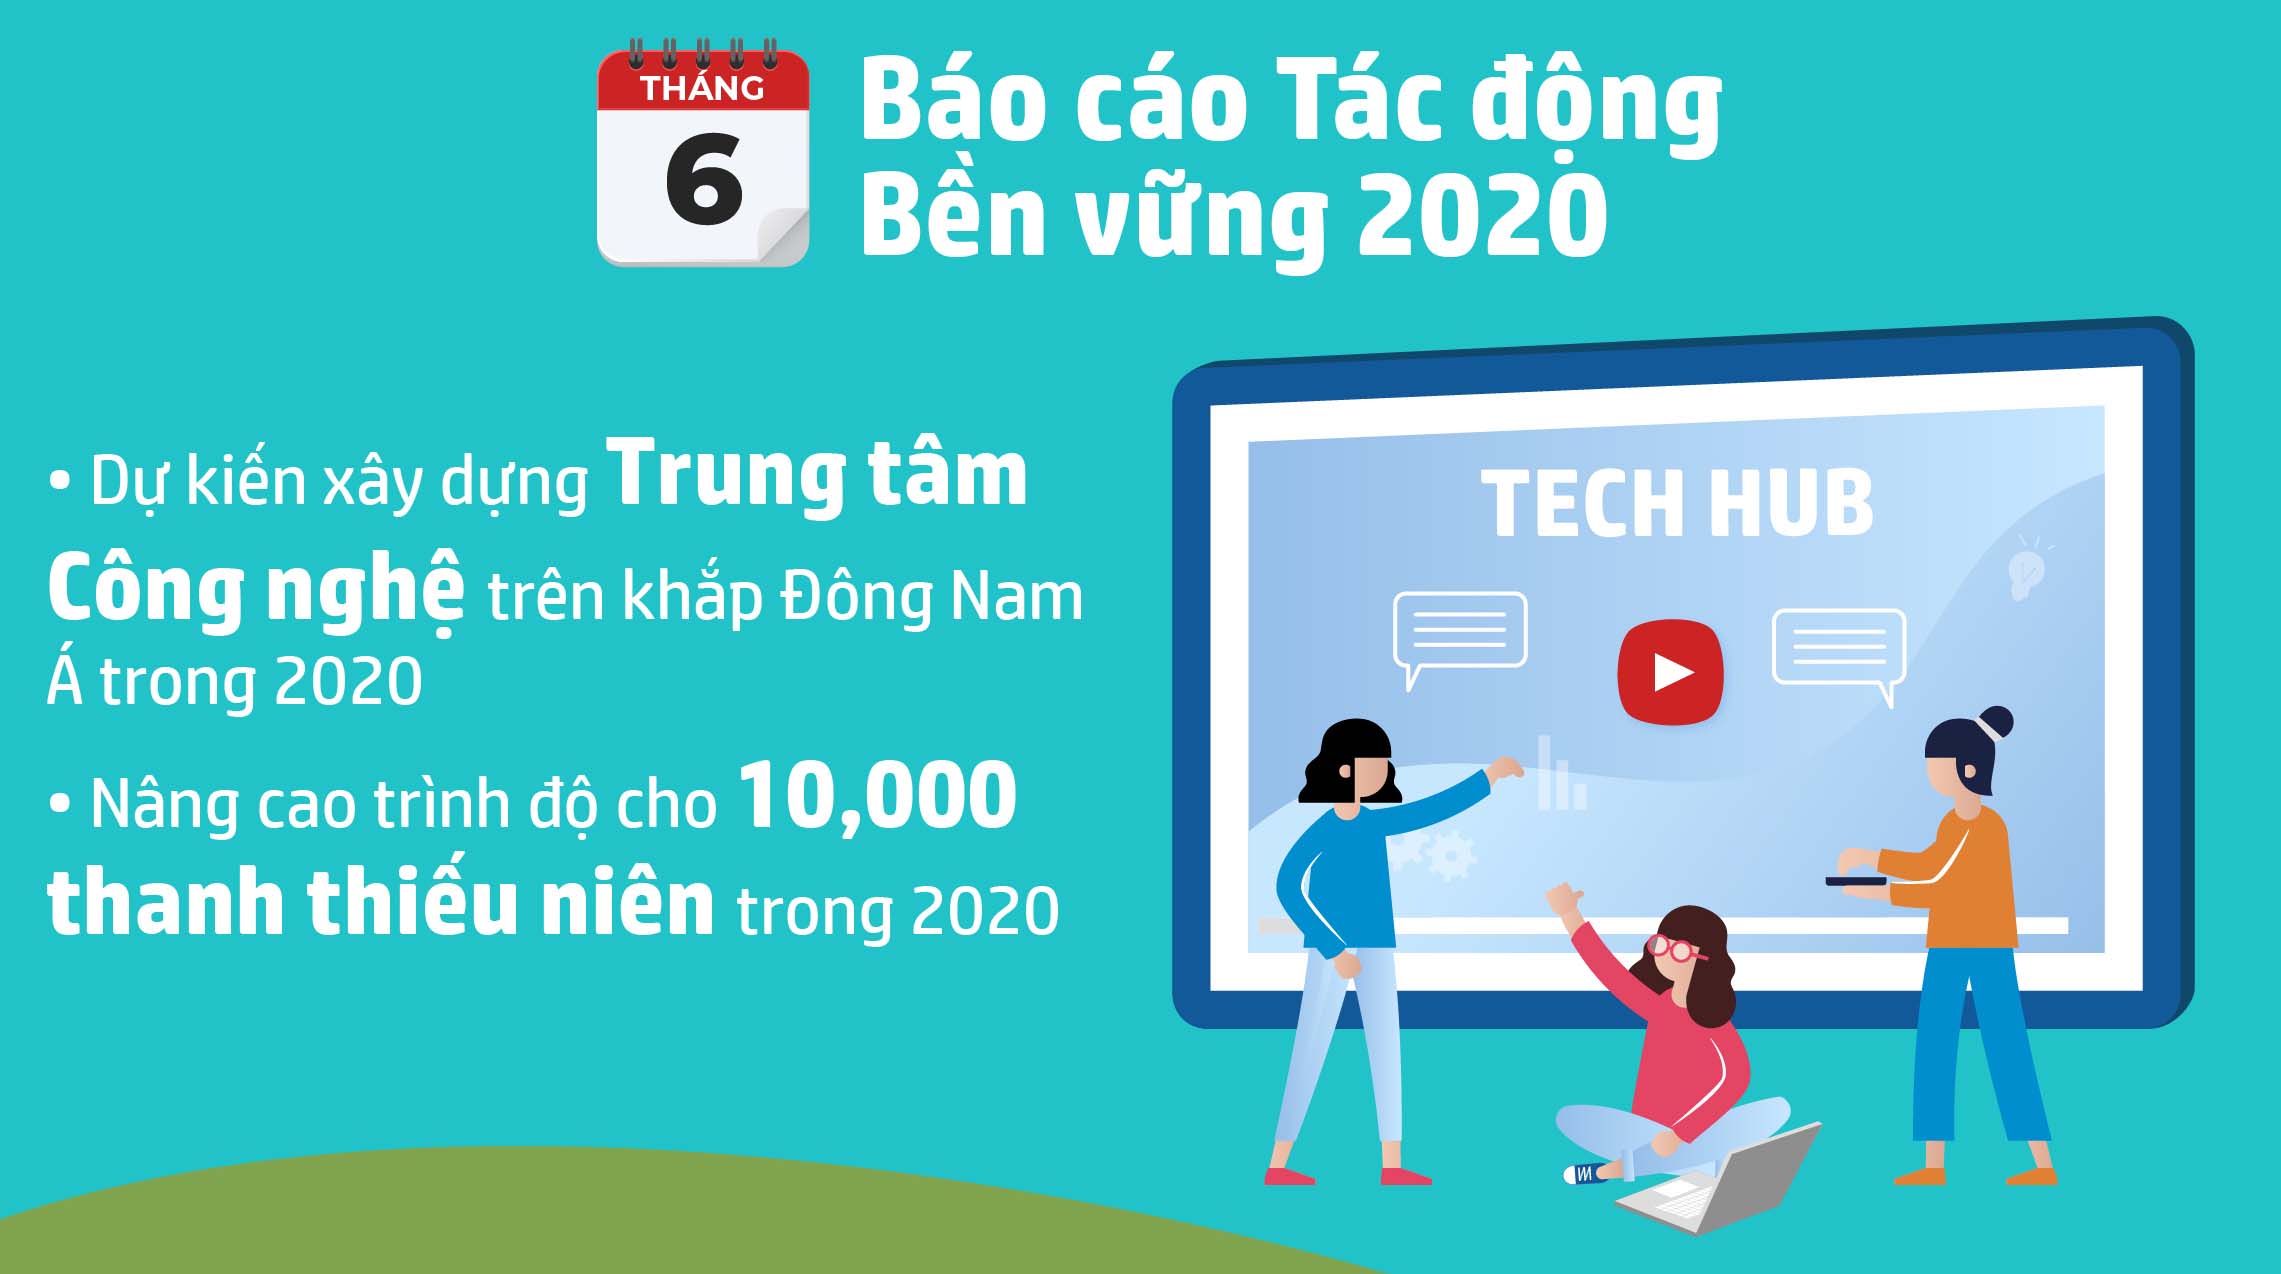 HP Việt Nam năm 2020: Một năm đầy cơ hội giữa những gián đoạn